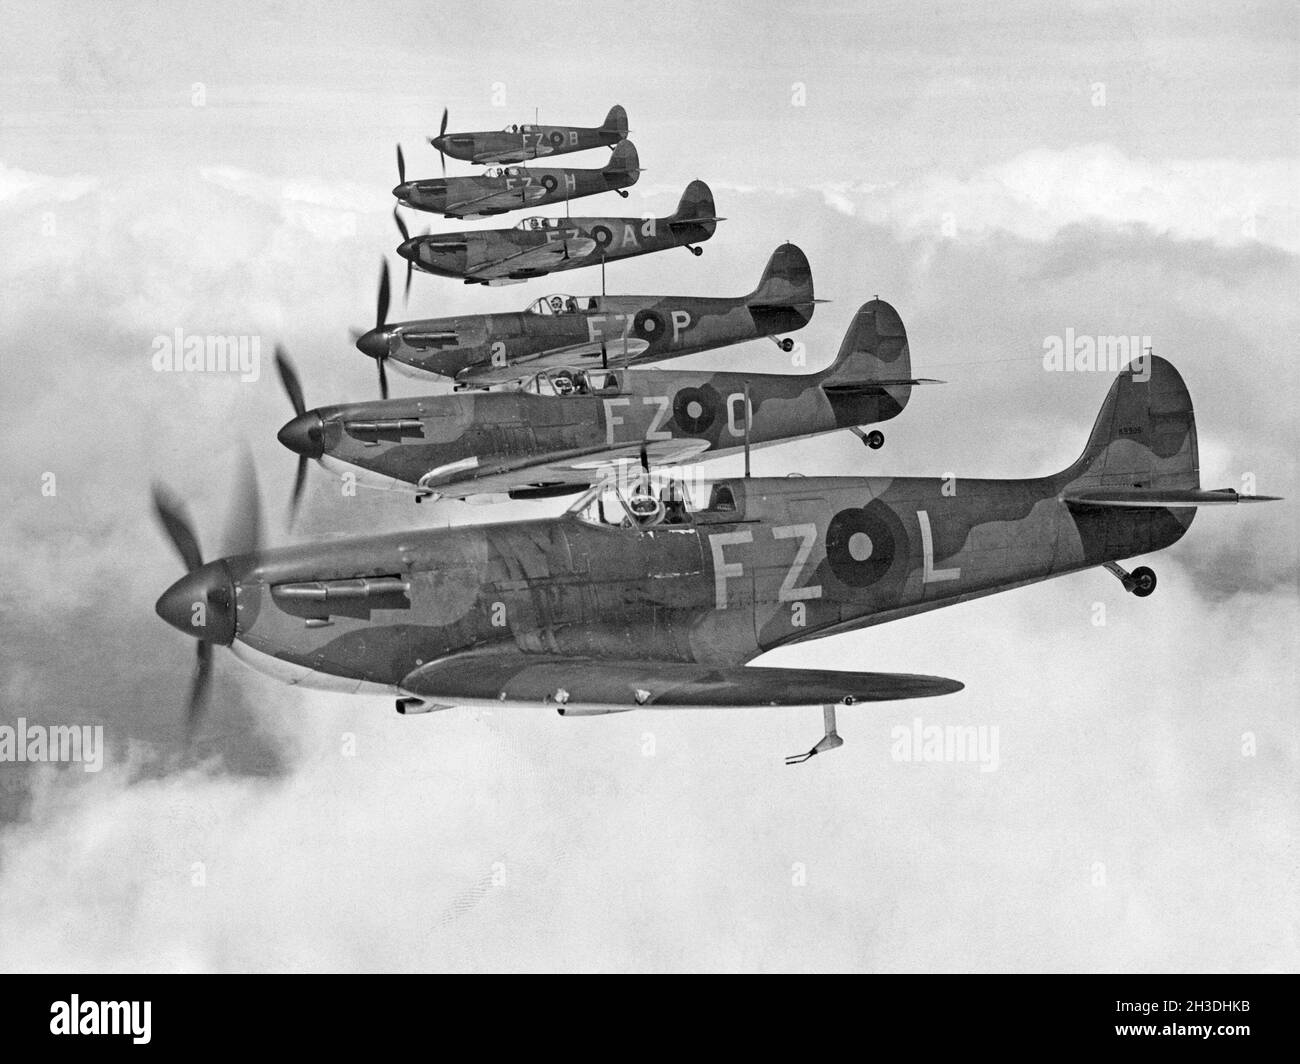 Historia del avión. Aviones de combate británicos, Supermarine Spitfire en el aire, uno frente al otro. Foto de stock